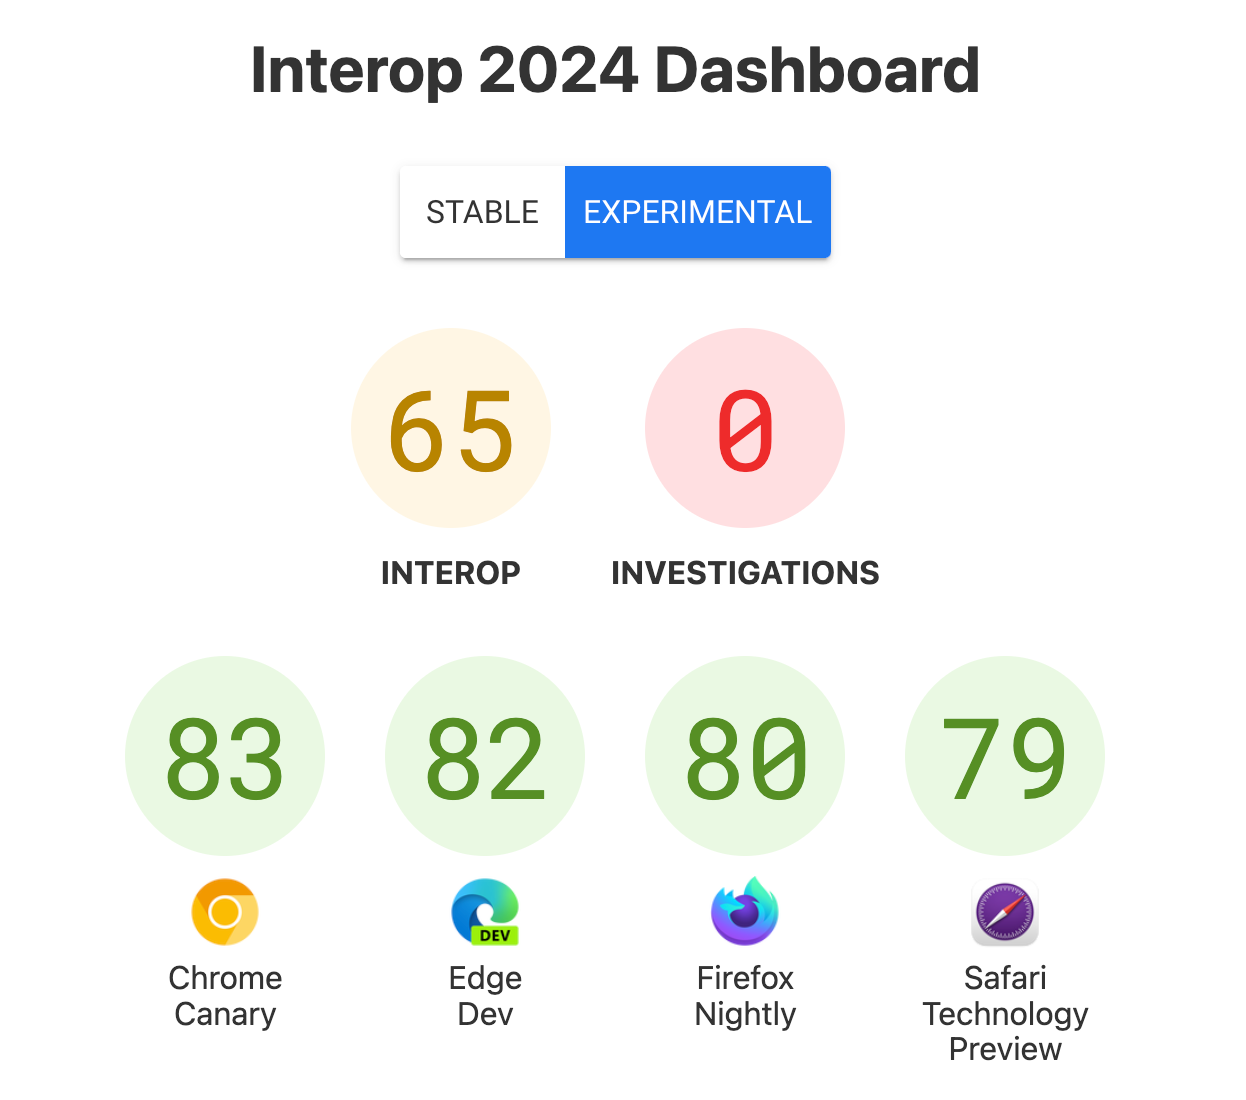 점수가 있는 대시보드 스크린샷 - Interop: 65, Investigations: 0, Chrome Canary: 83, Edge Dev: 82, Firefox Nightly: 80, Safari Technology Preview: 79.